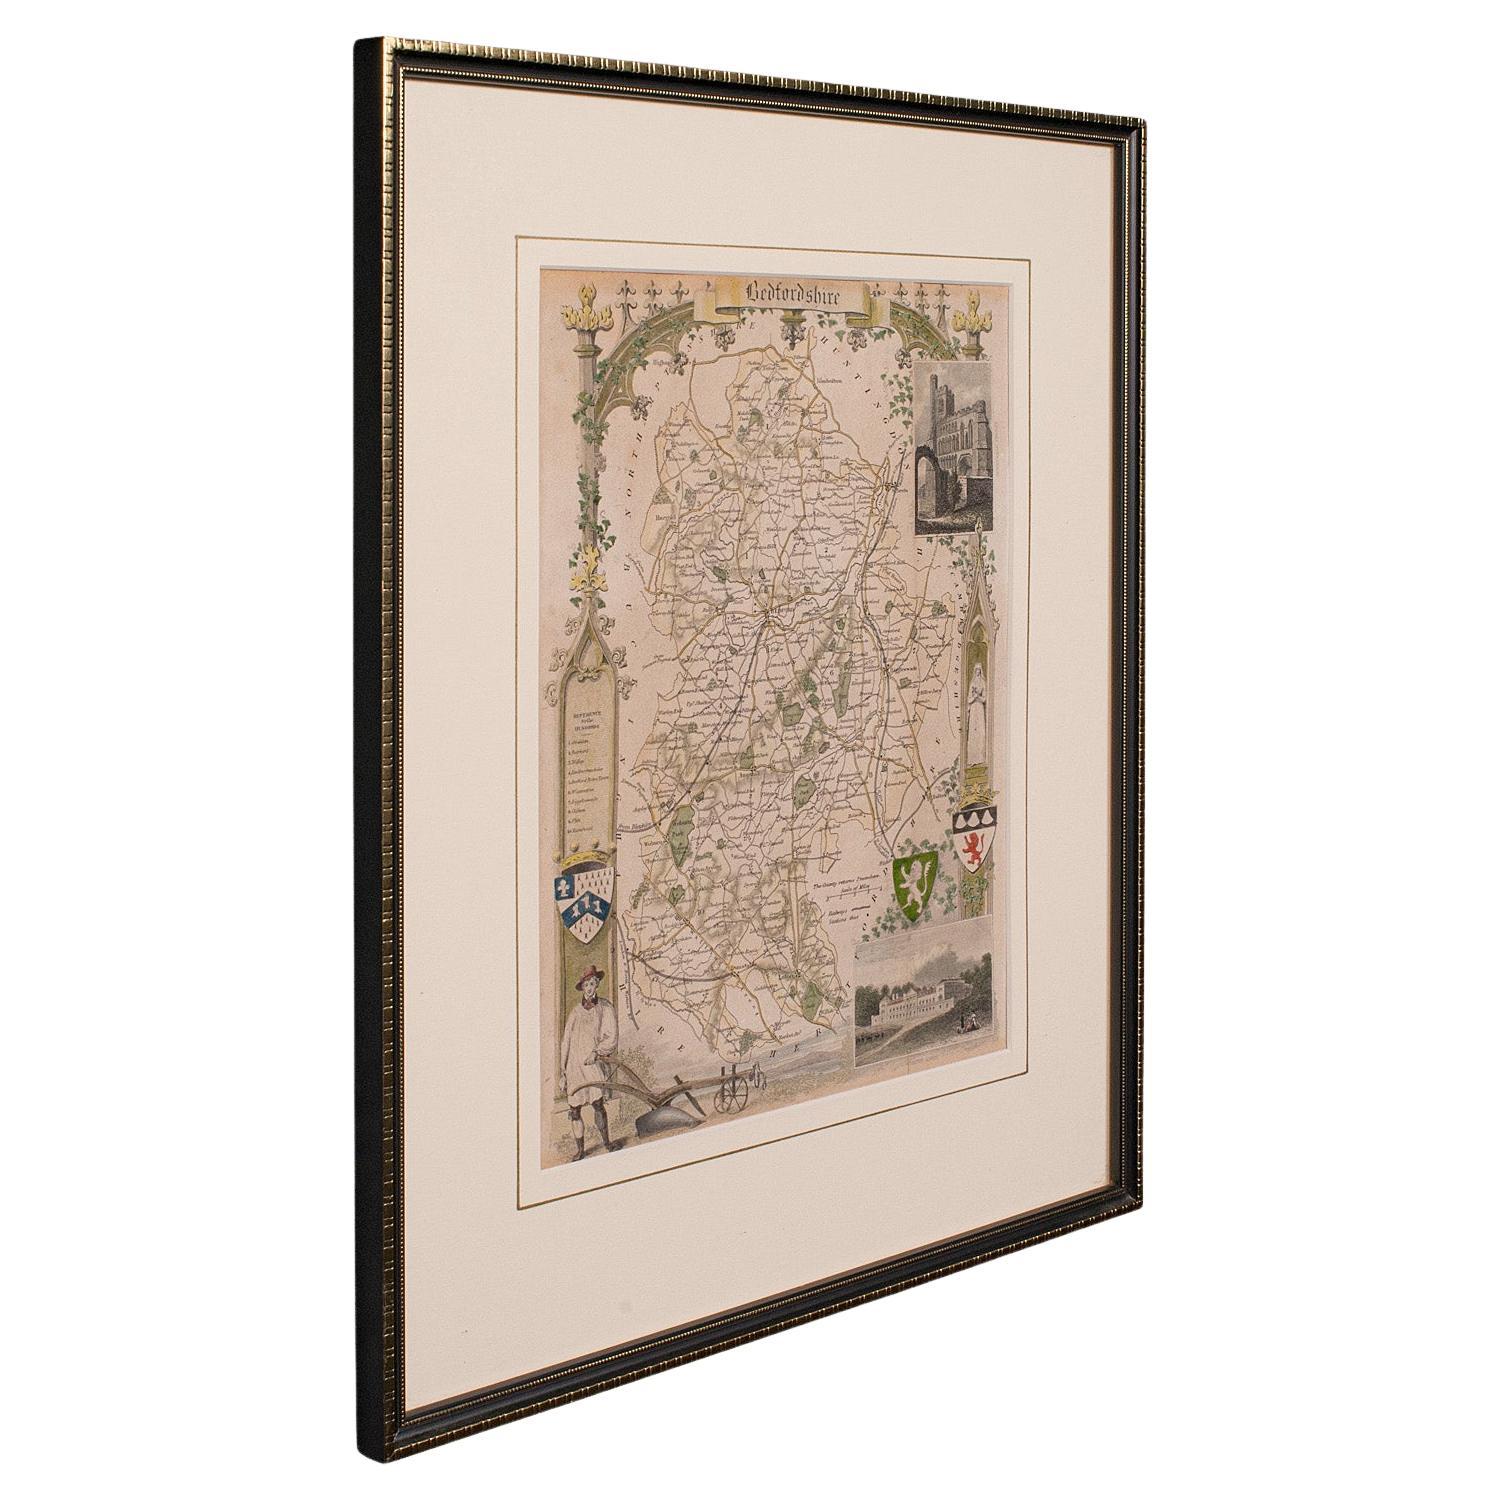 Carte lithographie ancienne, Bedfordshire, anglaise, gravure encadrée, cartographie